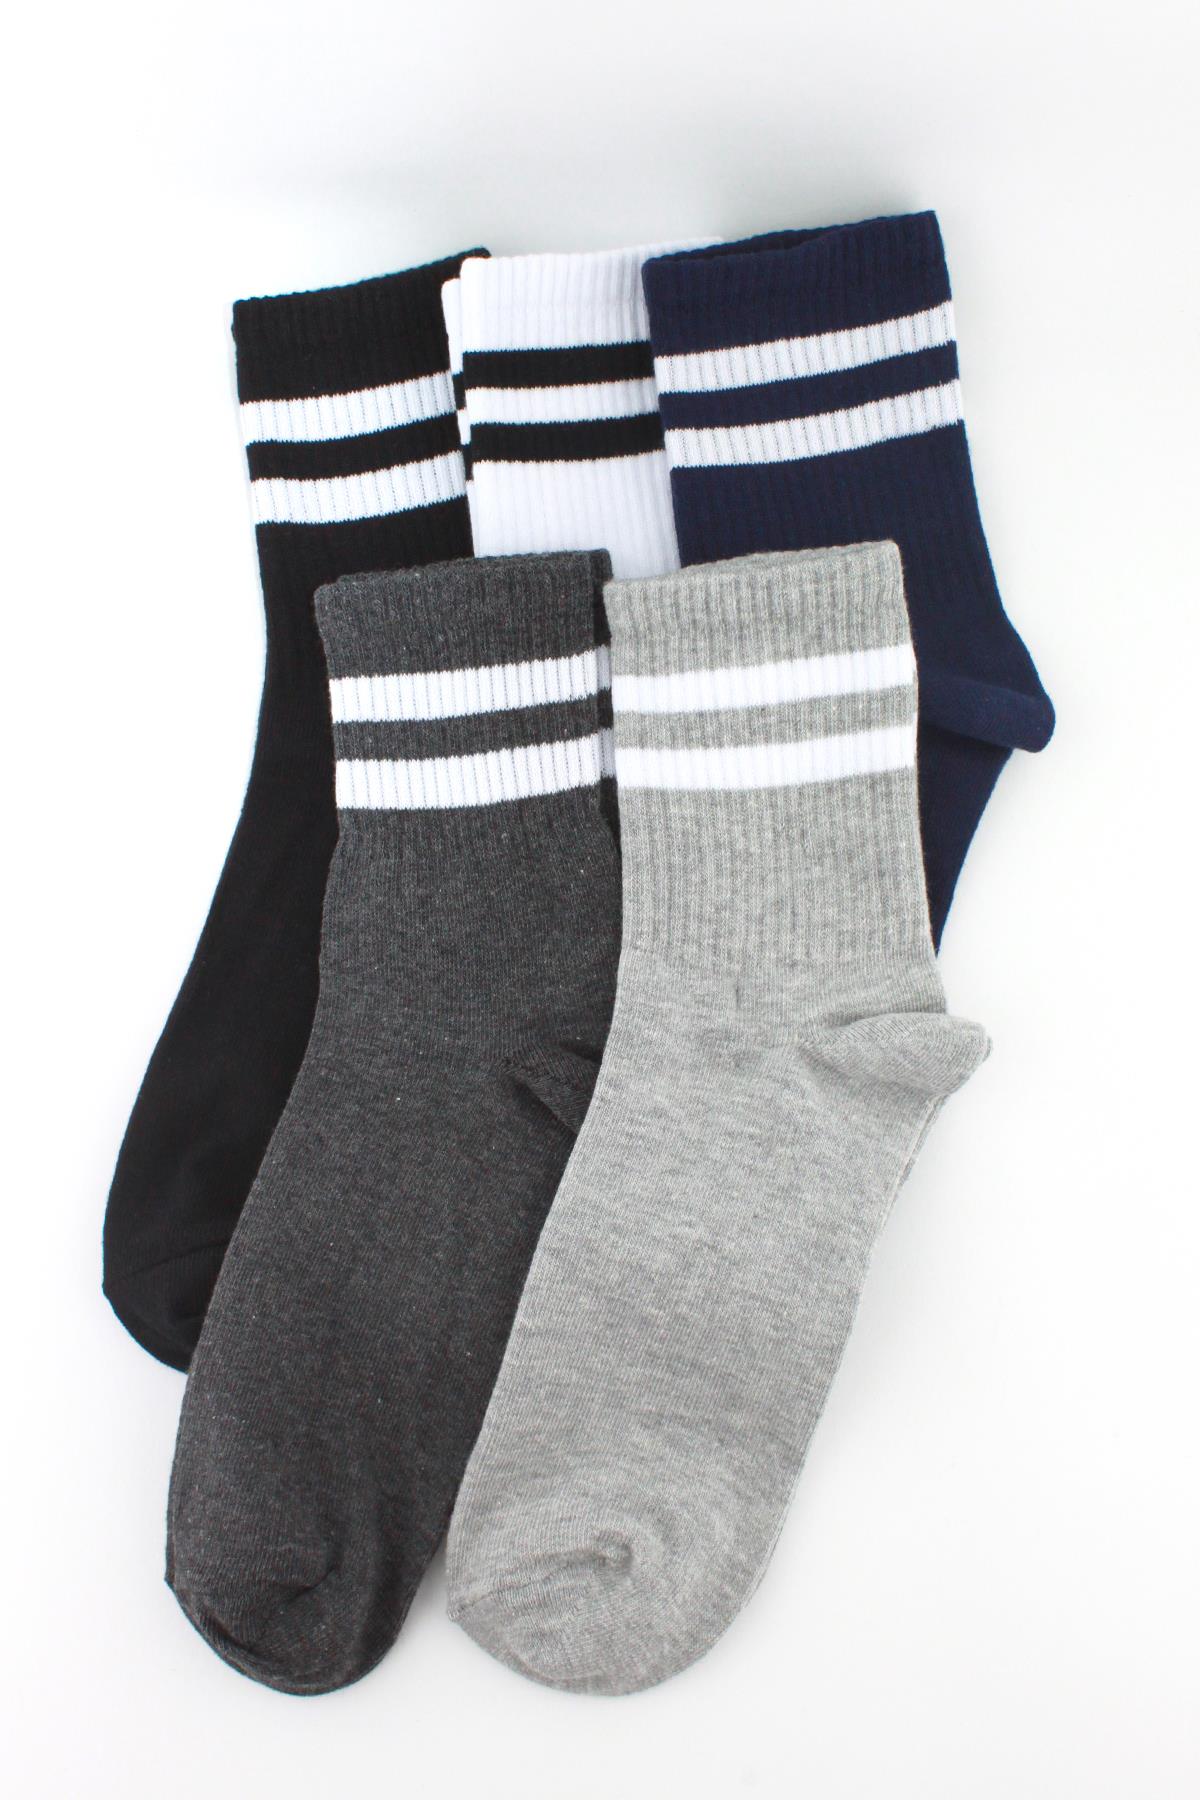 5 -pack white striped short socket men's unisex socks in different colors